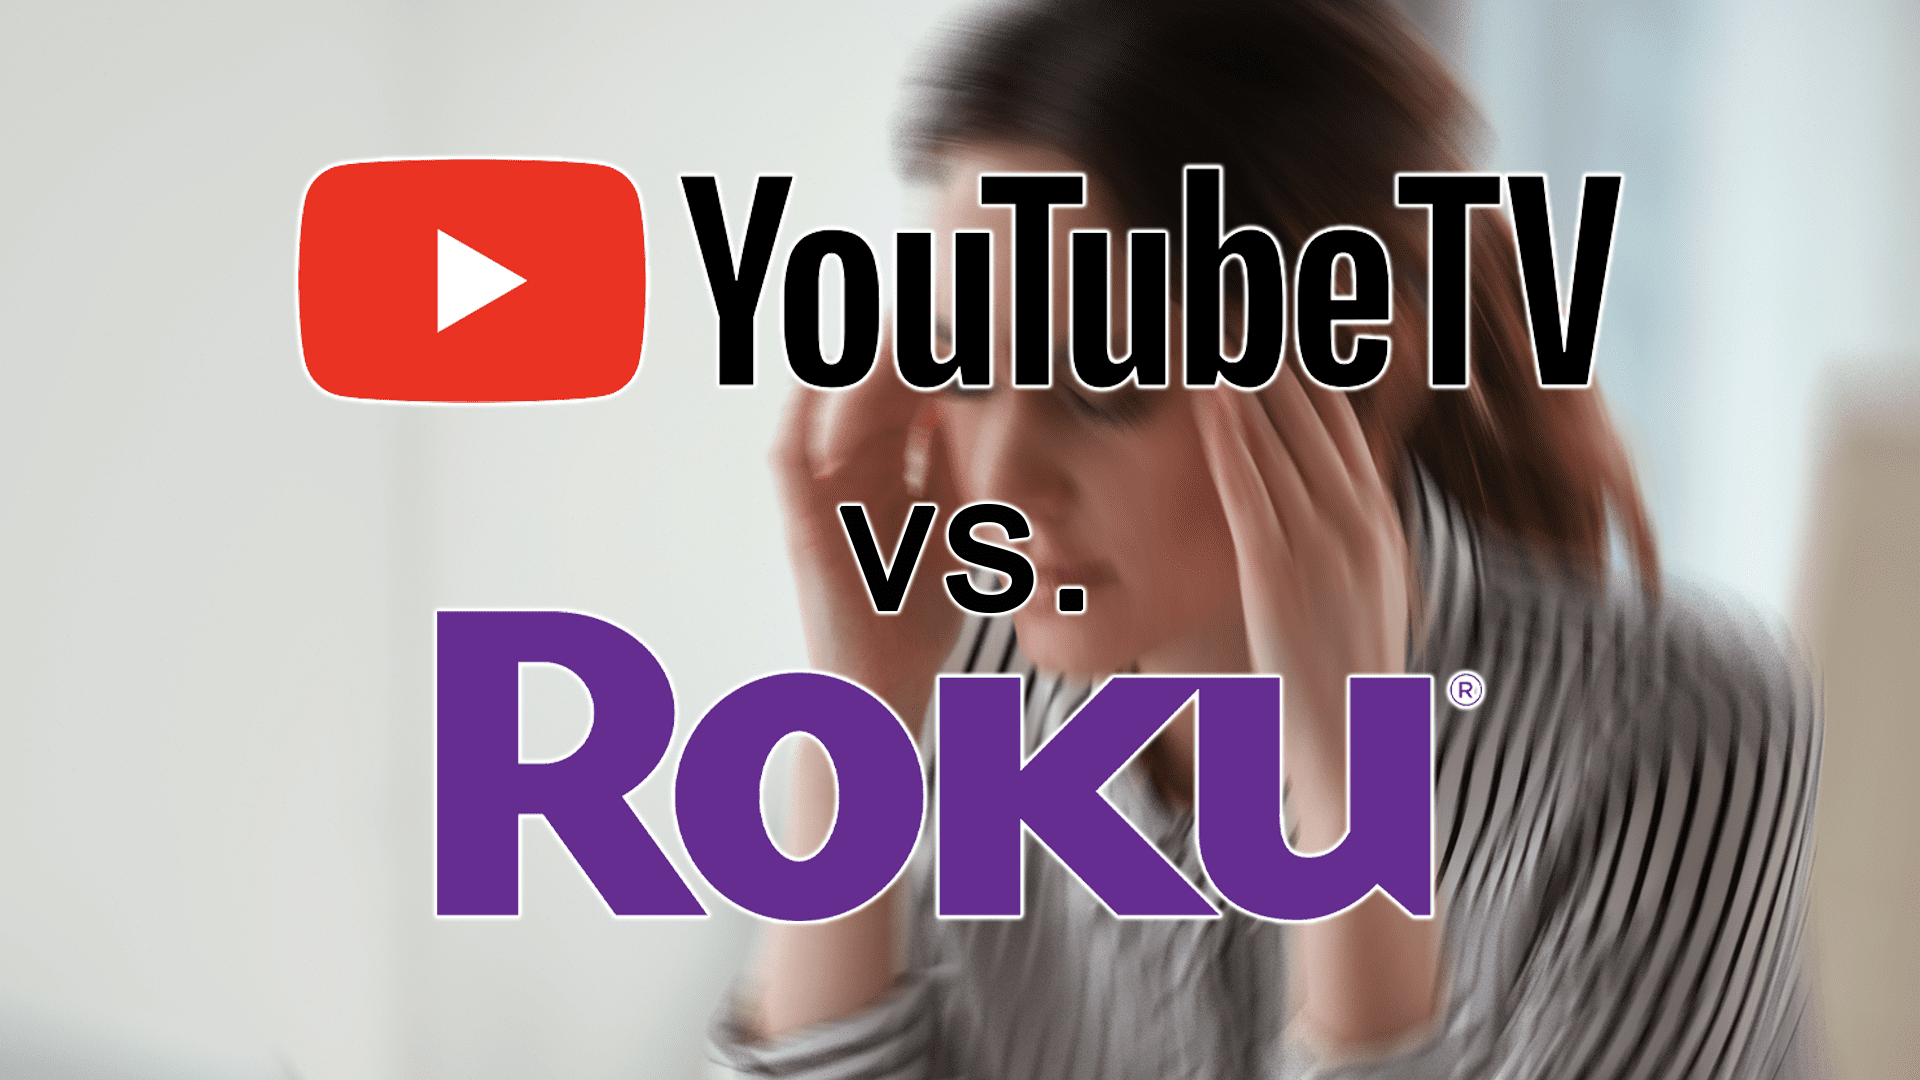 Vô lý: Bây giờ Roku có thể thua YouTube Quá